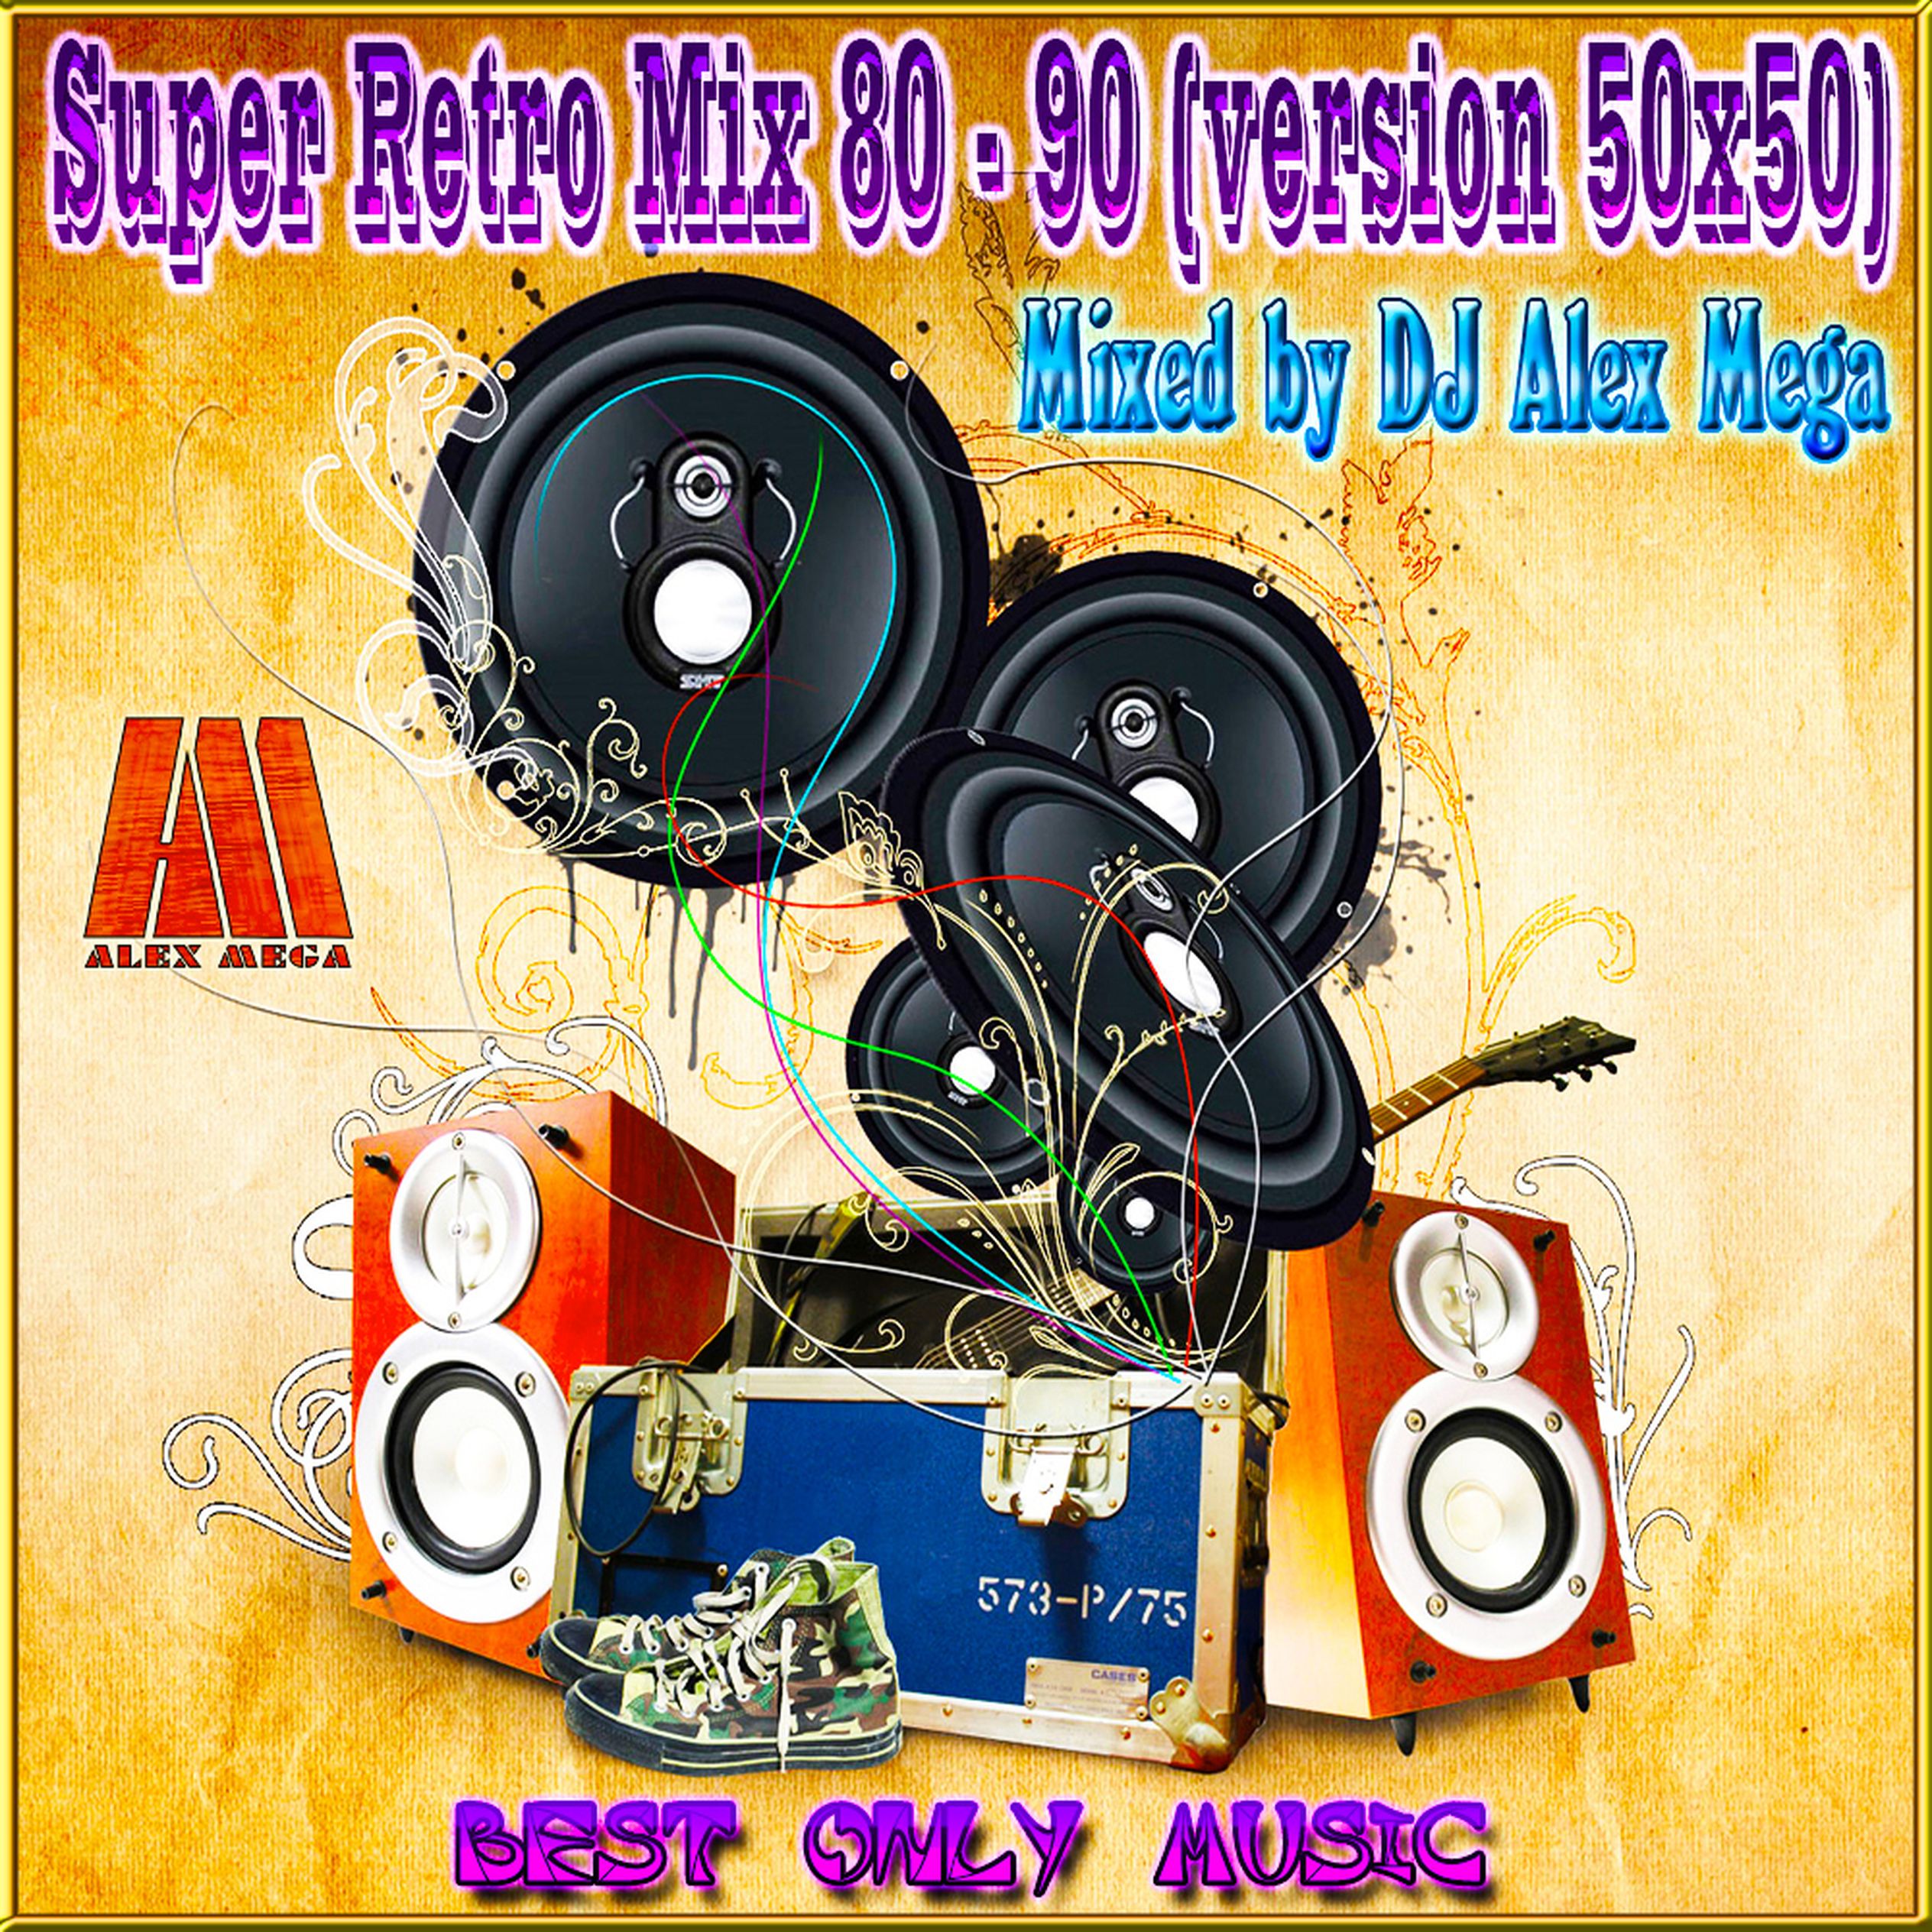 Слушать музыку 80 90 х 50 50. Диджей 80-90. Супер мега диджей. DJ Sergio Retro Mix. Retro Mix 80 90.